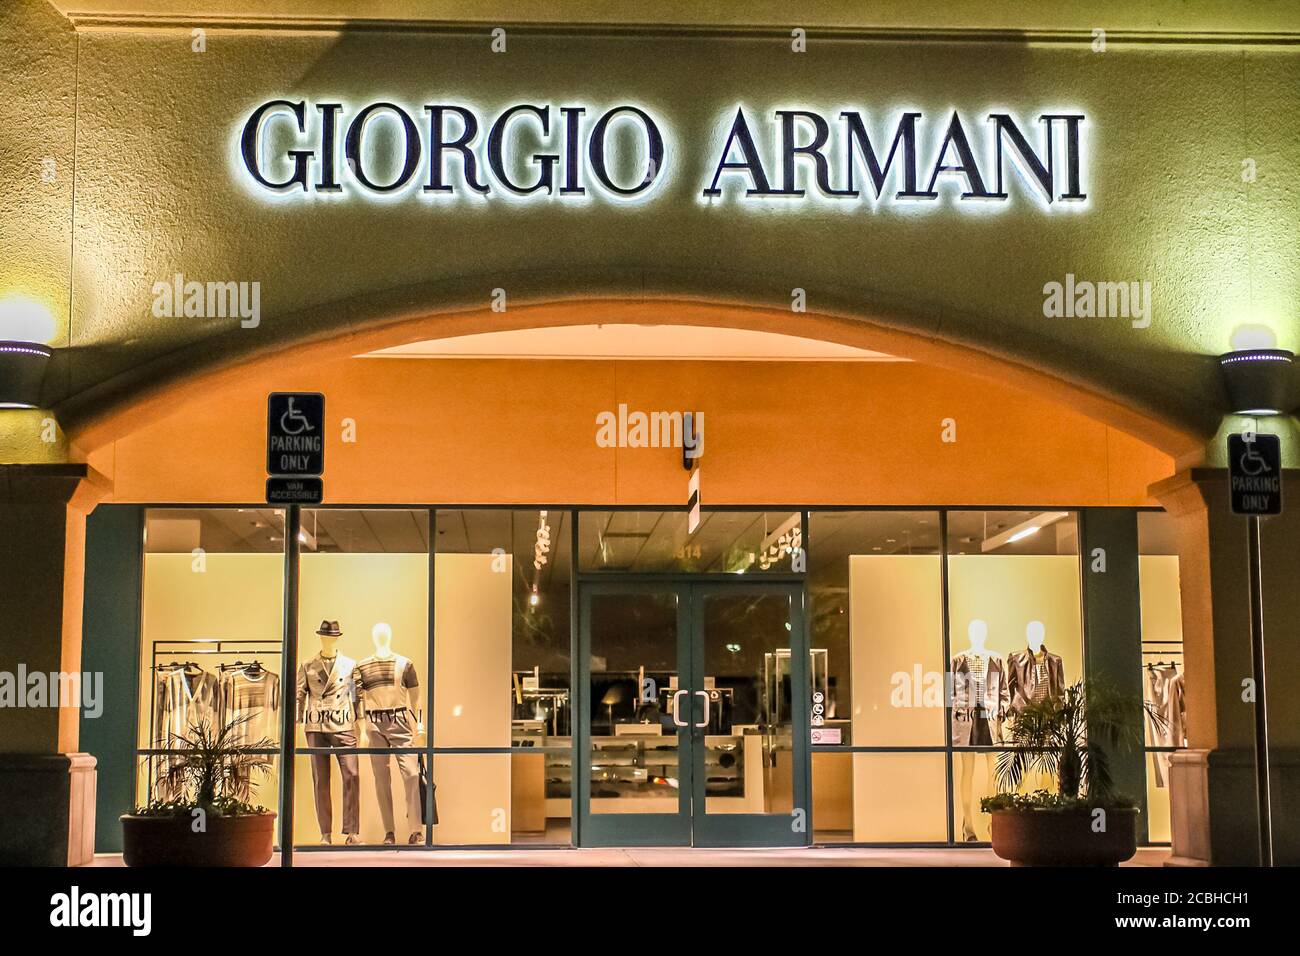 giorgio armani outlet near me